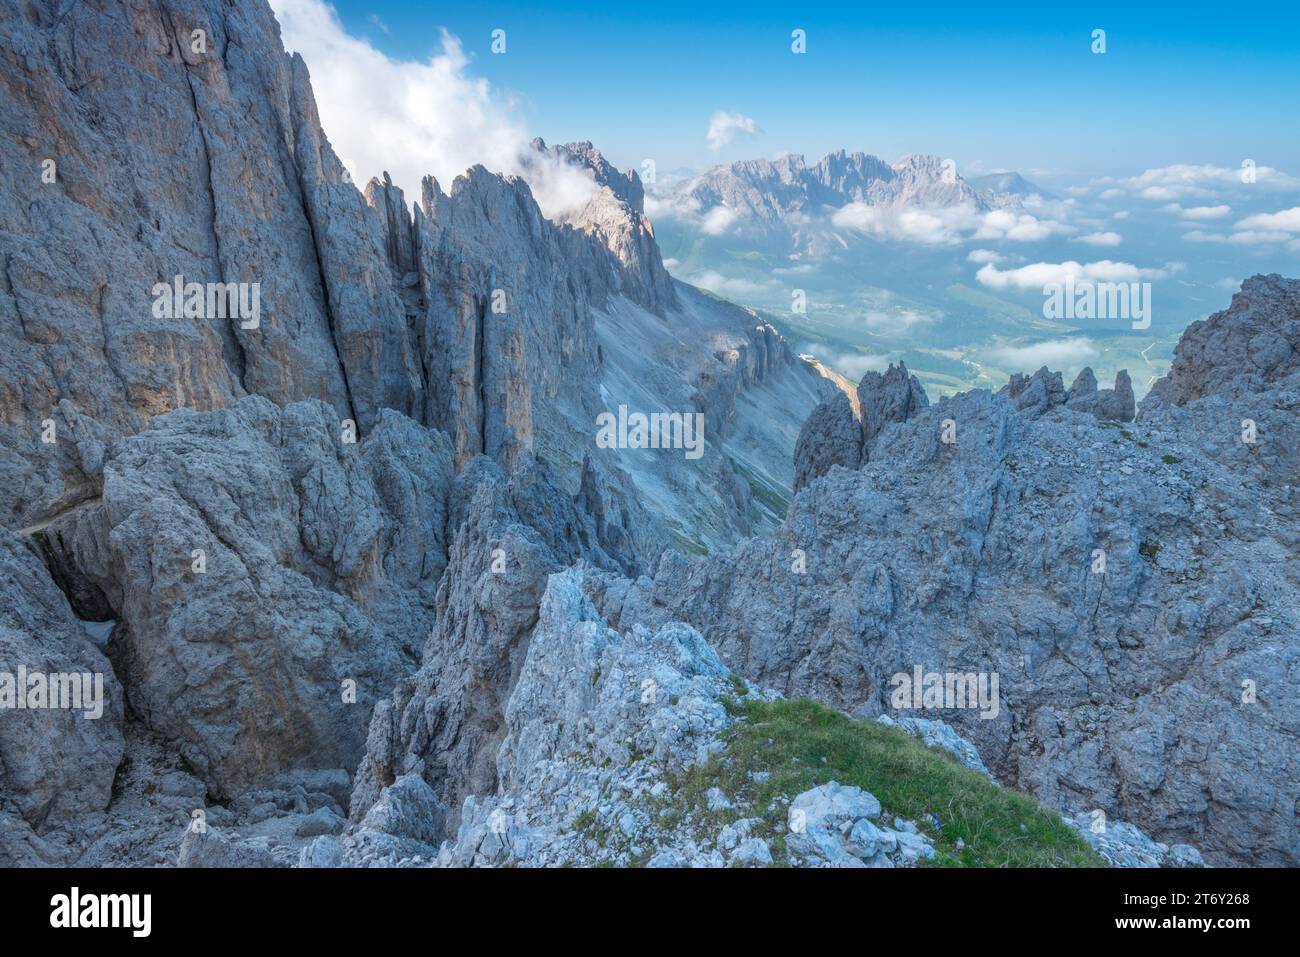 Via ferrata Santner nel gruppo del Catinaccio delle Dolomiti. Escursioni alpine attraverso ripidi pendii rocciosi e pinnacoli calcarei. Foto Stock